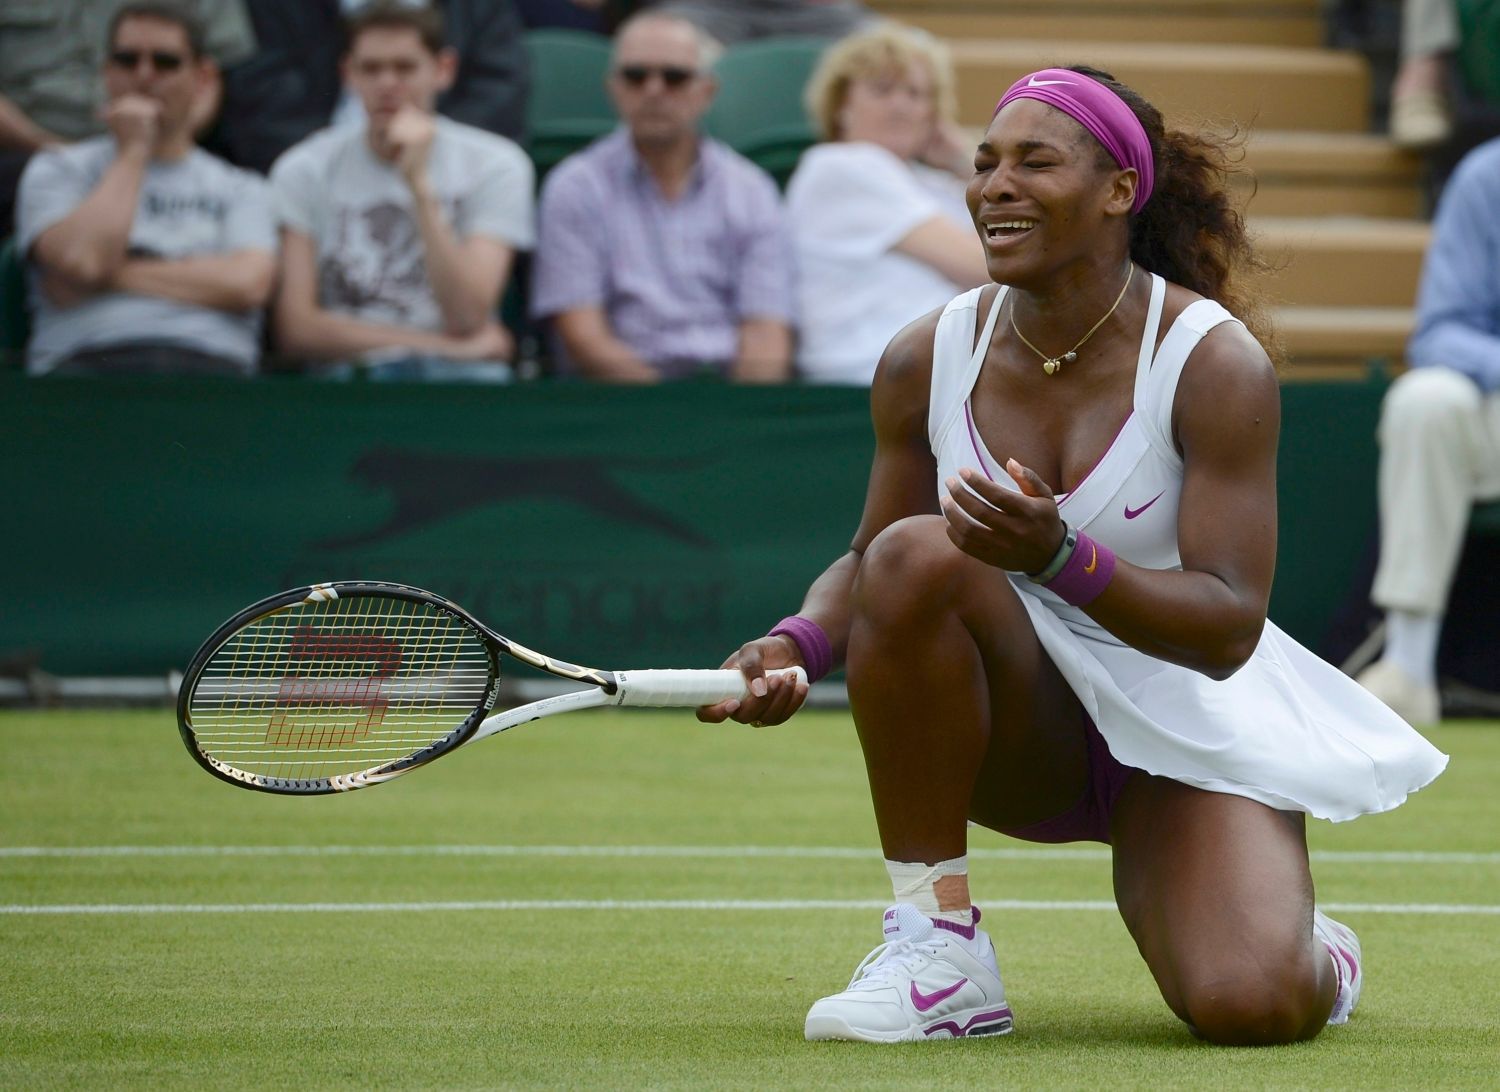 Americká tenistka Serena Williamsová se raduje z vítězství nad Barborou Záhlavovou Strýcovou z České republiky v 1. kole Wimbledonu 2012.